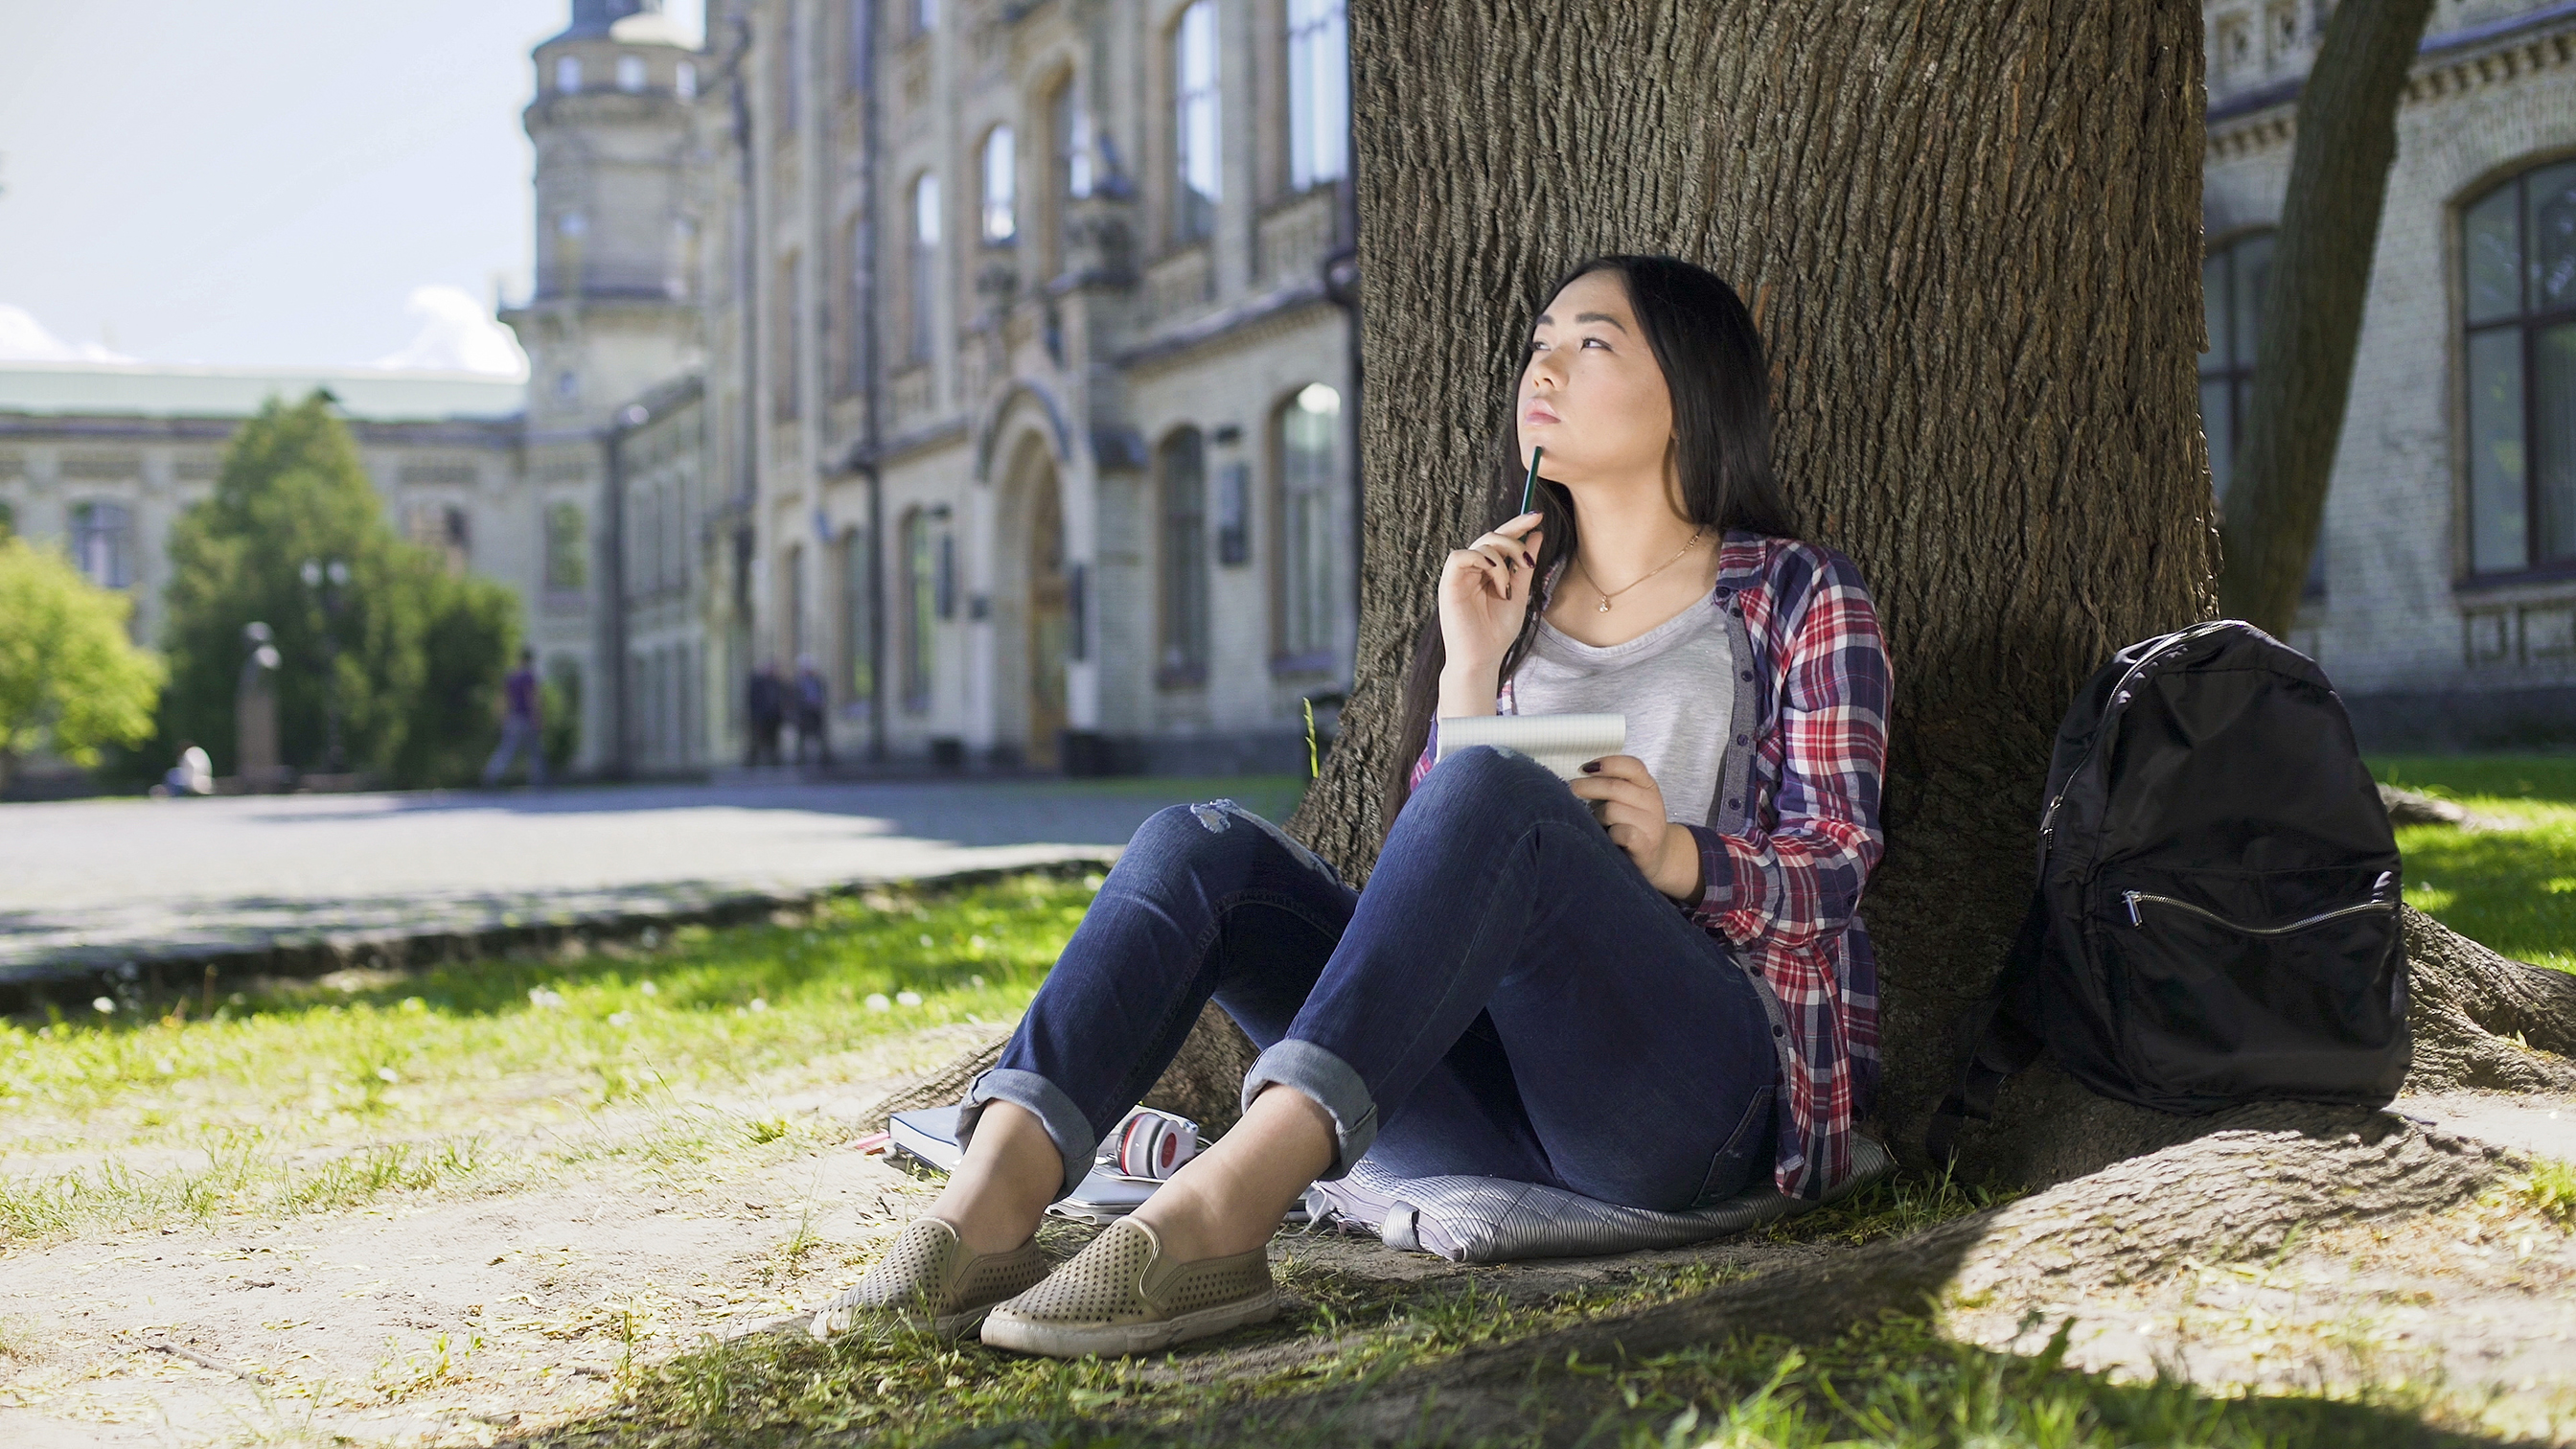 Eine Studentin sitzt im Gras und lehnt sich nachdenklich an einen Baum. Sie befindet sich auf einem Universitätscampus und hält Block und Stift.